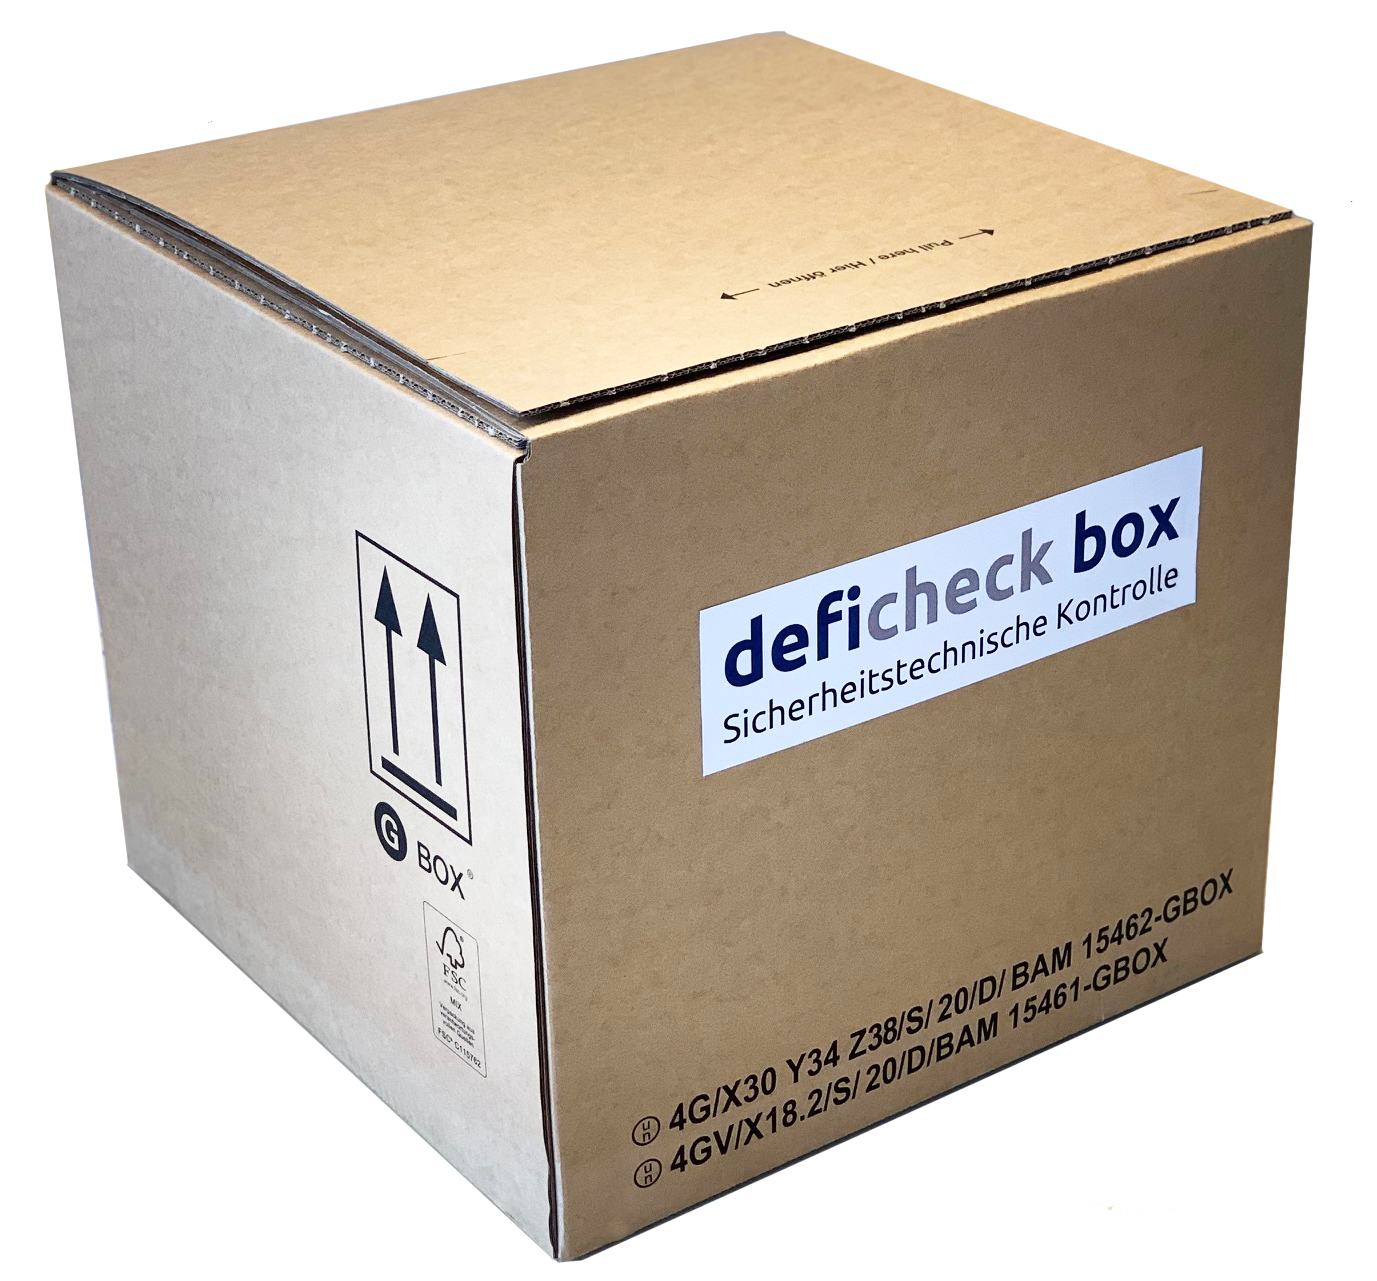 deficheck box Leerkarton für STK Kunden